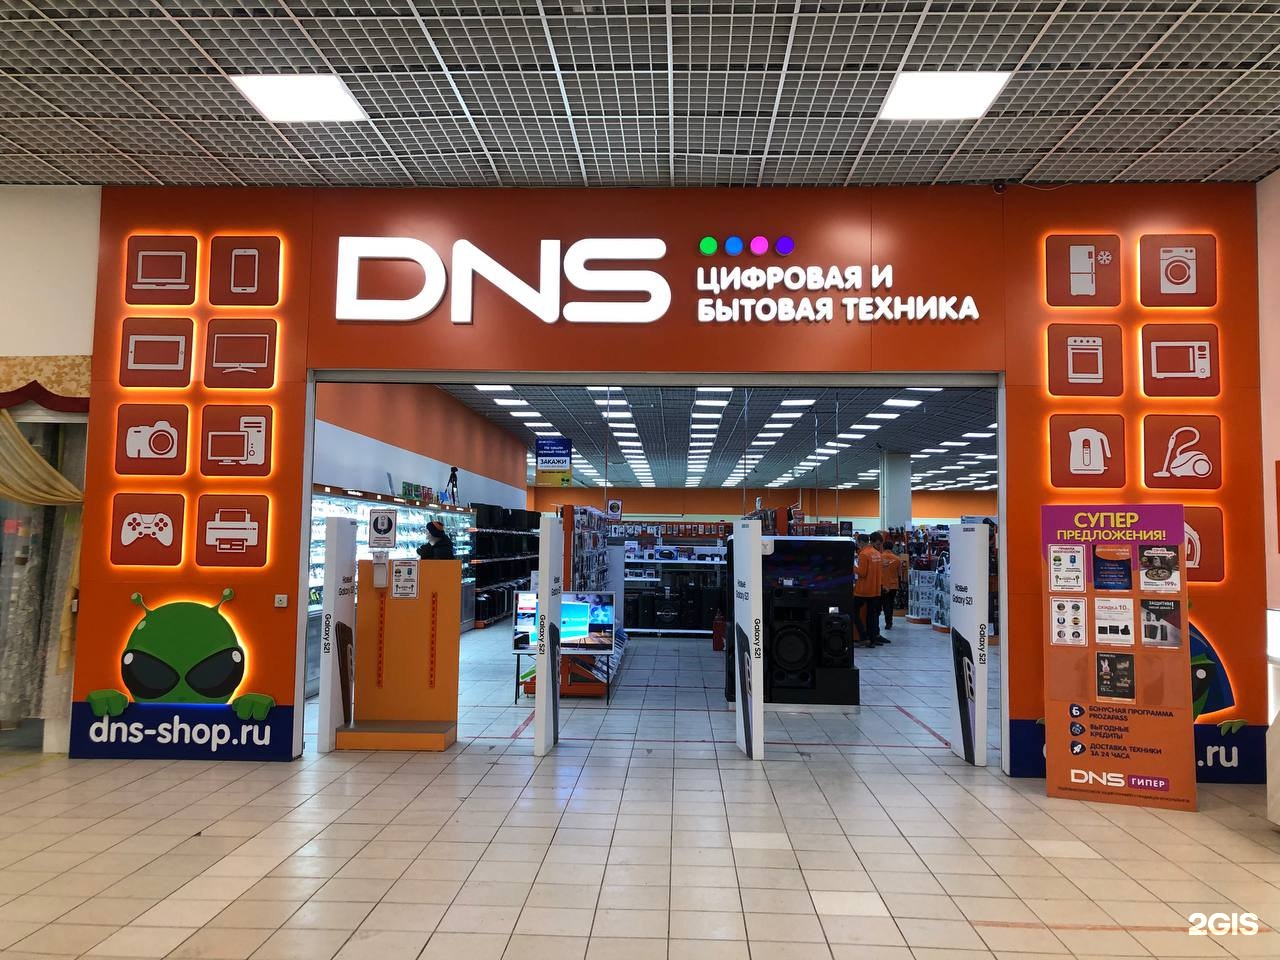 Купить центр в днс. Сервисный центр ДНС Чита Анохина 91. DNS Уфа. Компьютерный центр "DNS". ДНС компьютер центр.